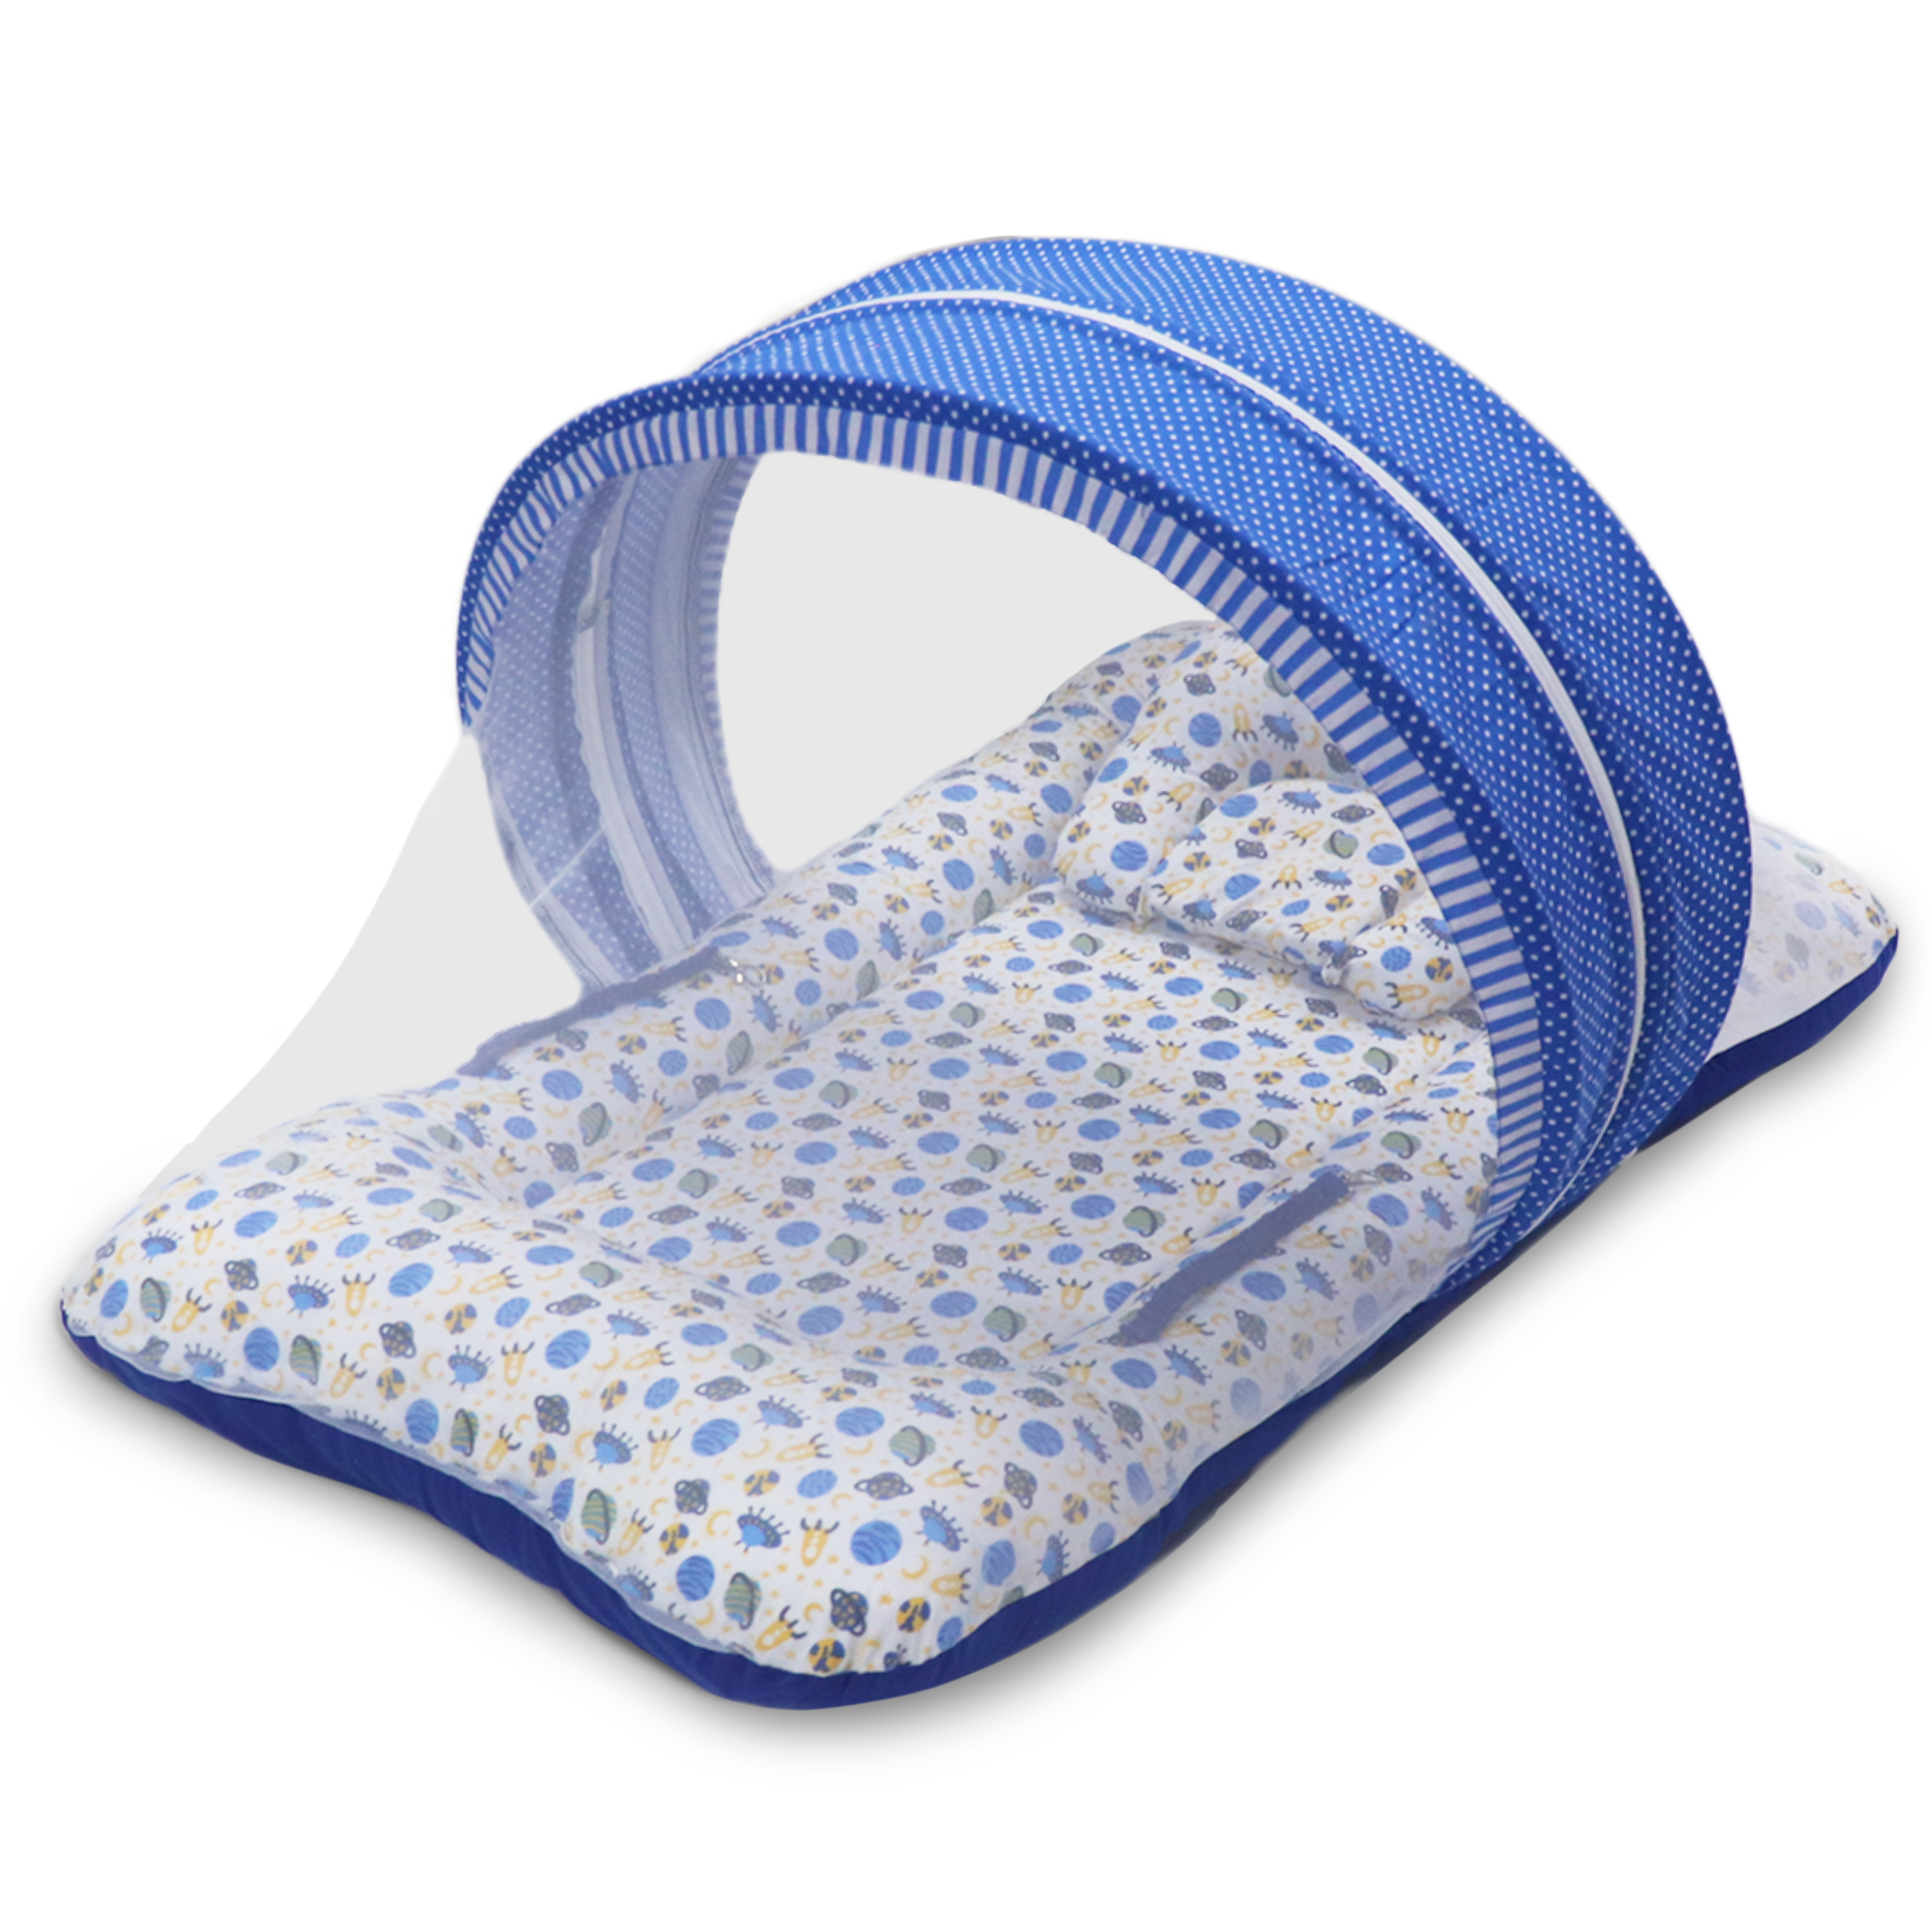 Satellite -  Kradyl Kroft Bassinet Style Mosquito Net Bedding for Infants